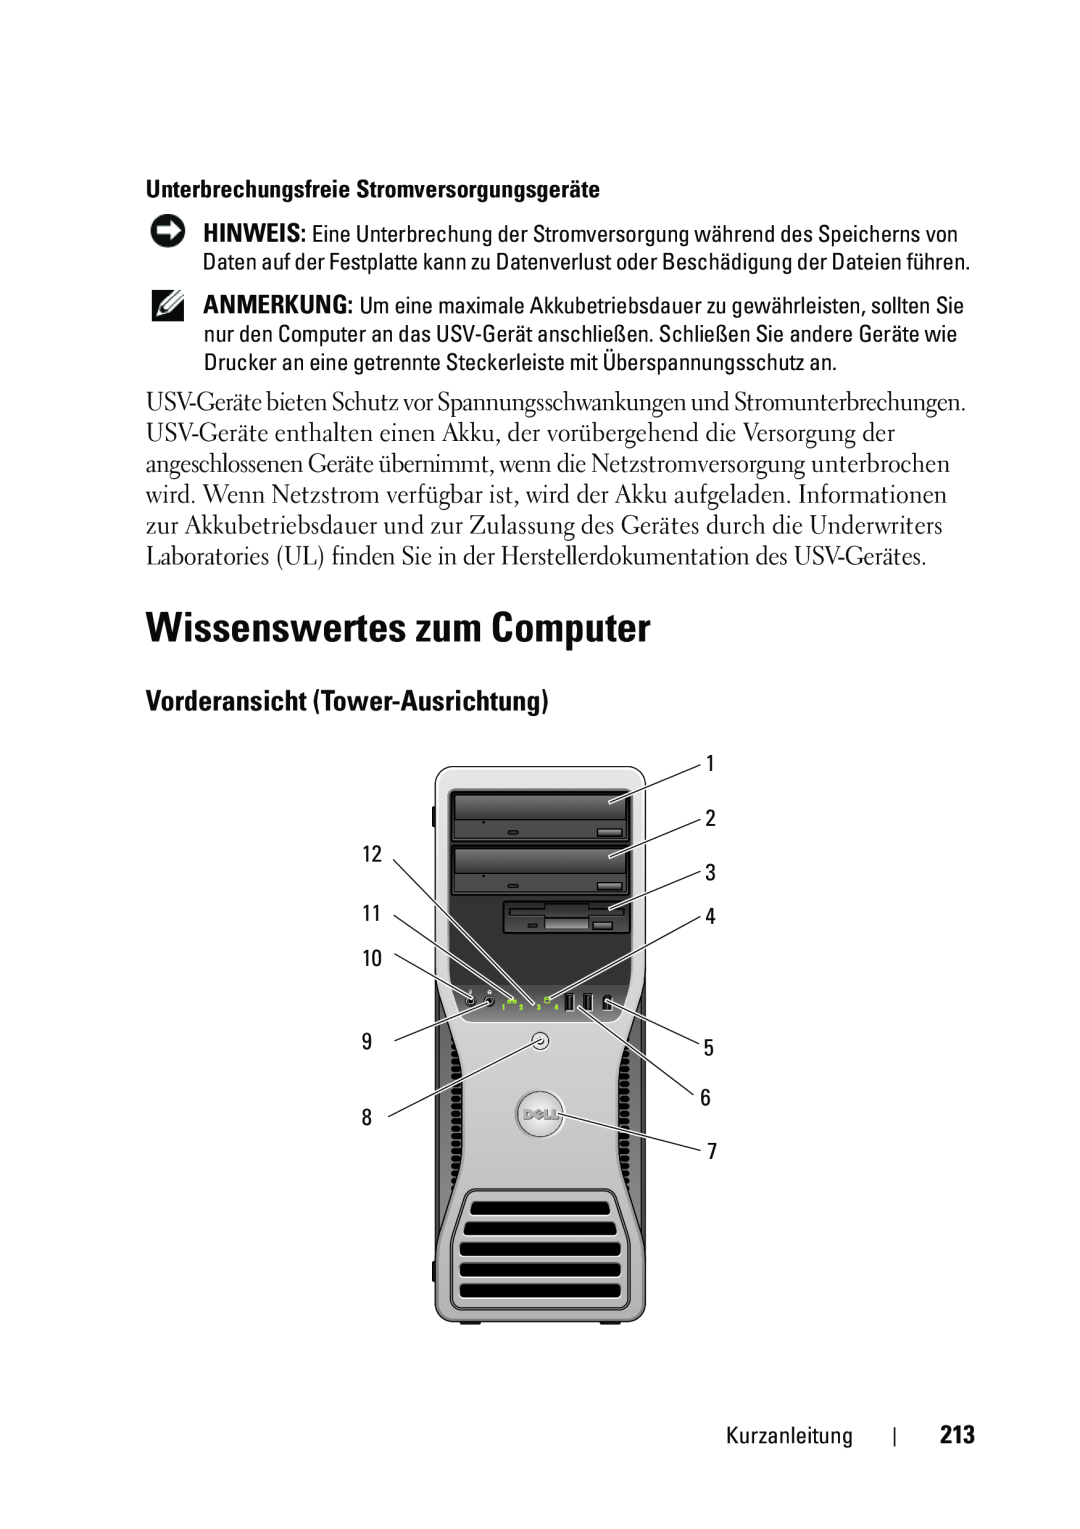 Dell T5400 manual Wissenswertes zum Computer, Vorderansicht Tower-Ausrichtung, Unterbrechungsfreie Stromversorgungsgeräte 